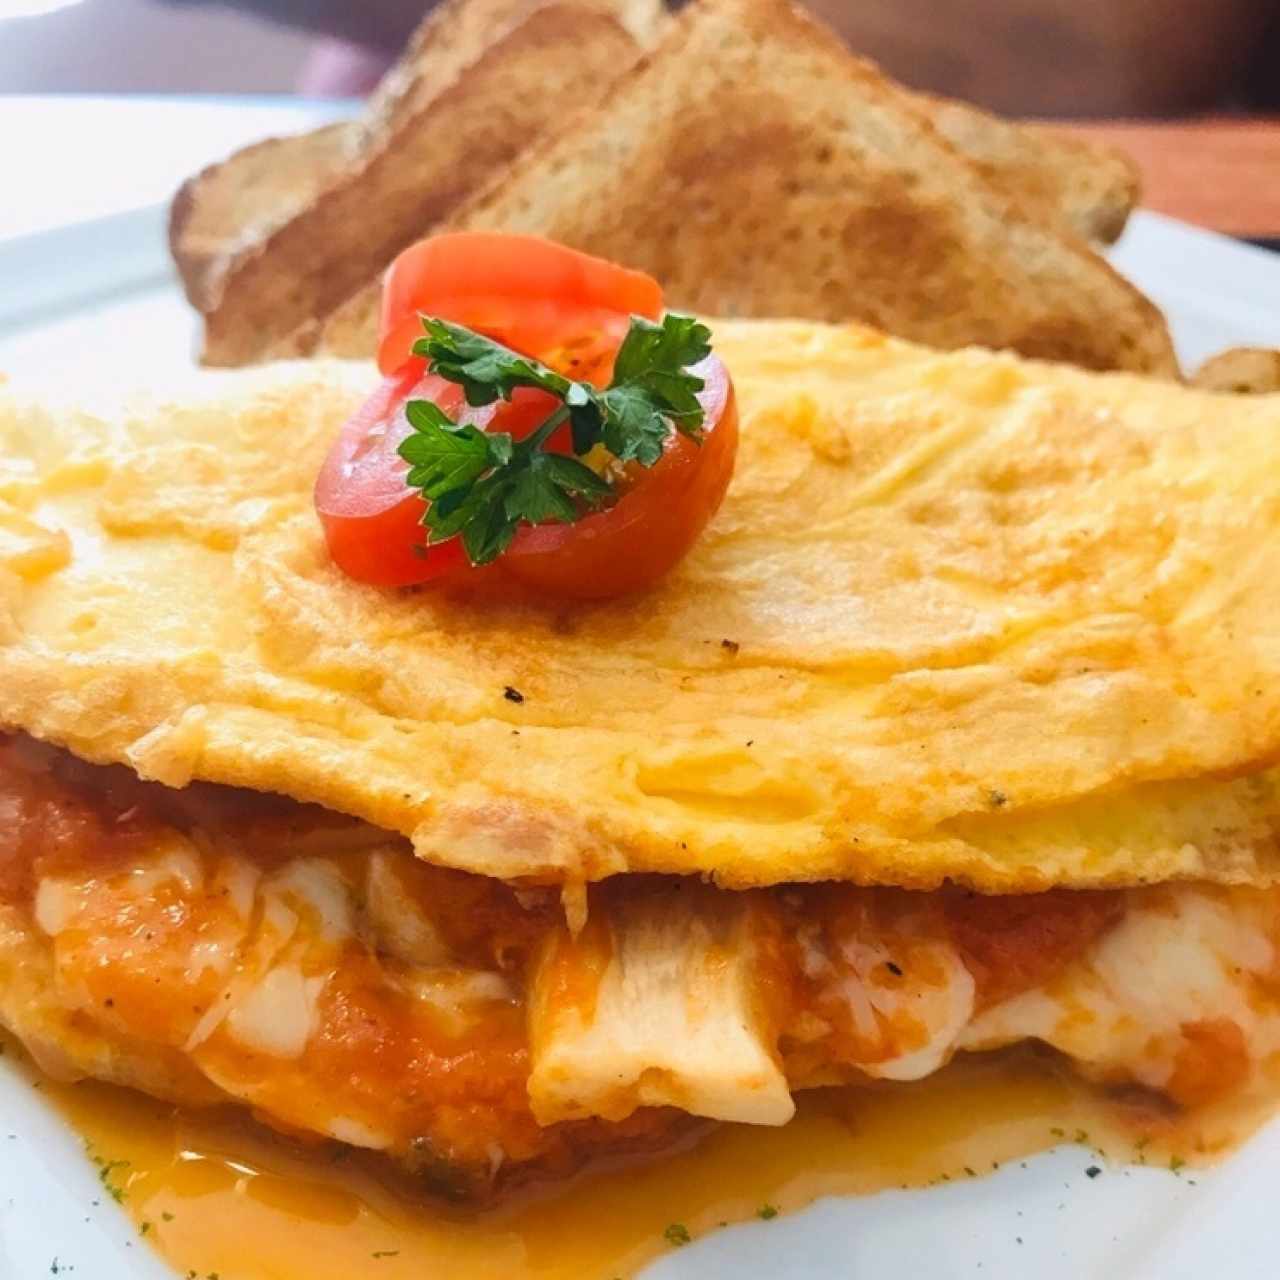 omelet con hongos en salsa pomodoro